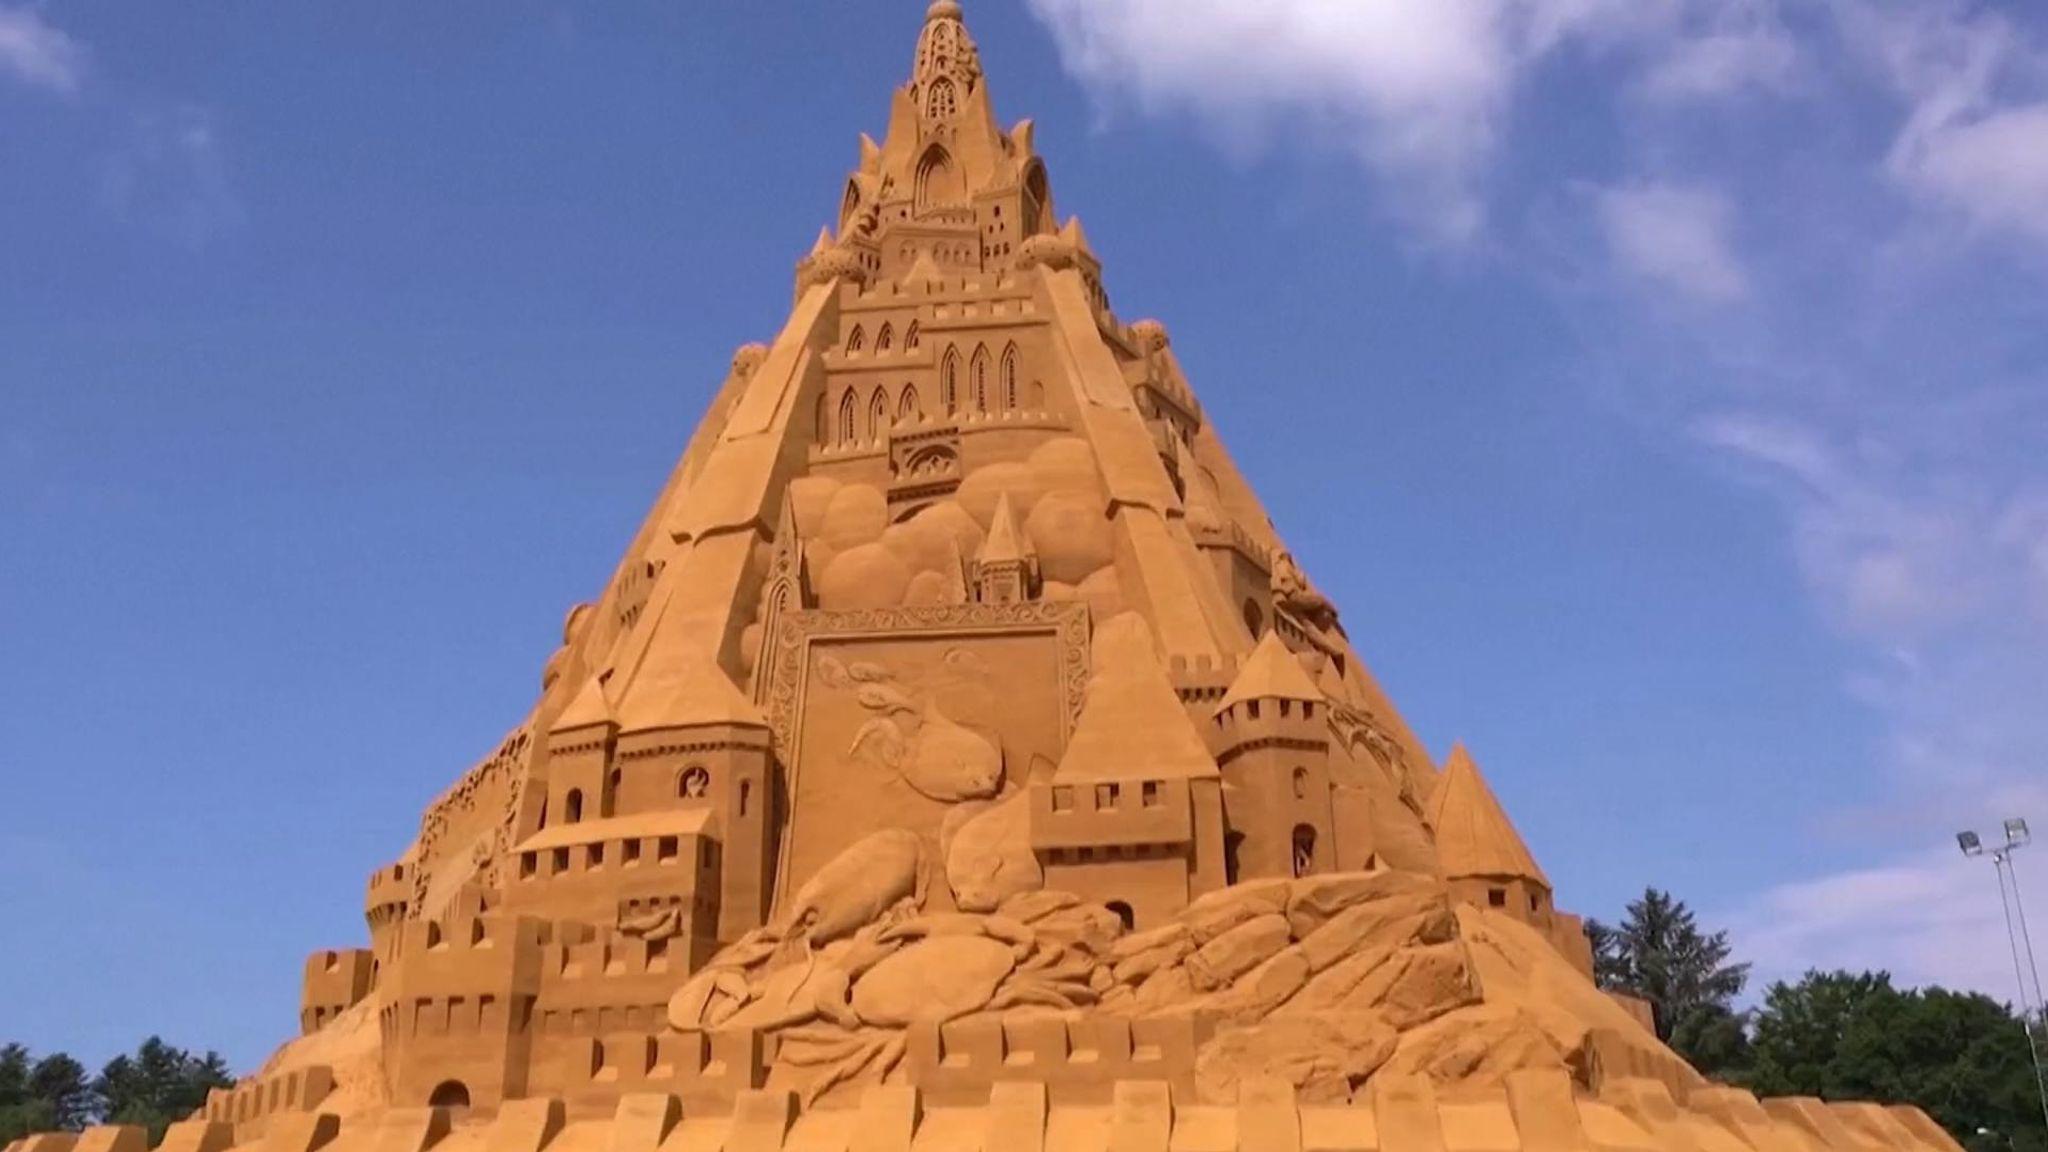 World's tallest sandcastle constructed in Denmark_40.1